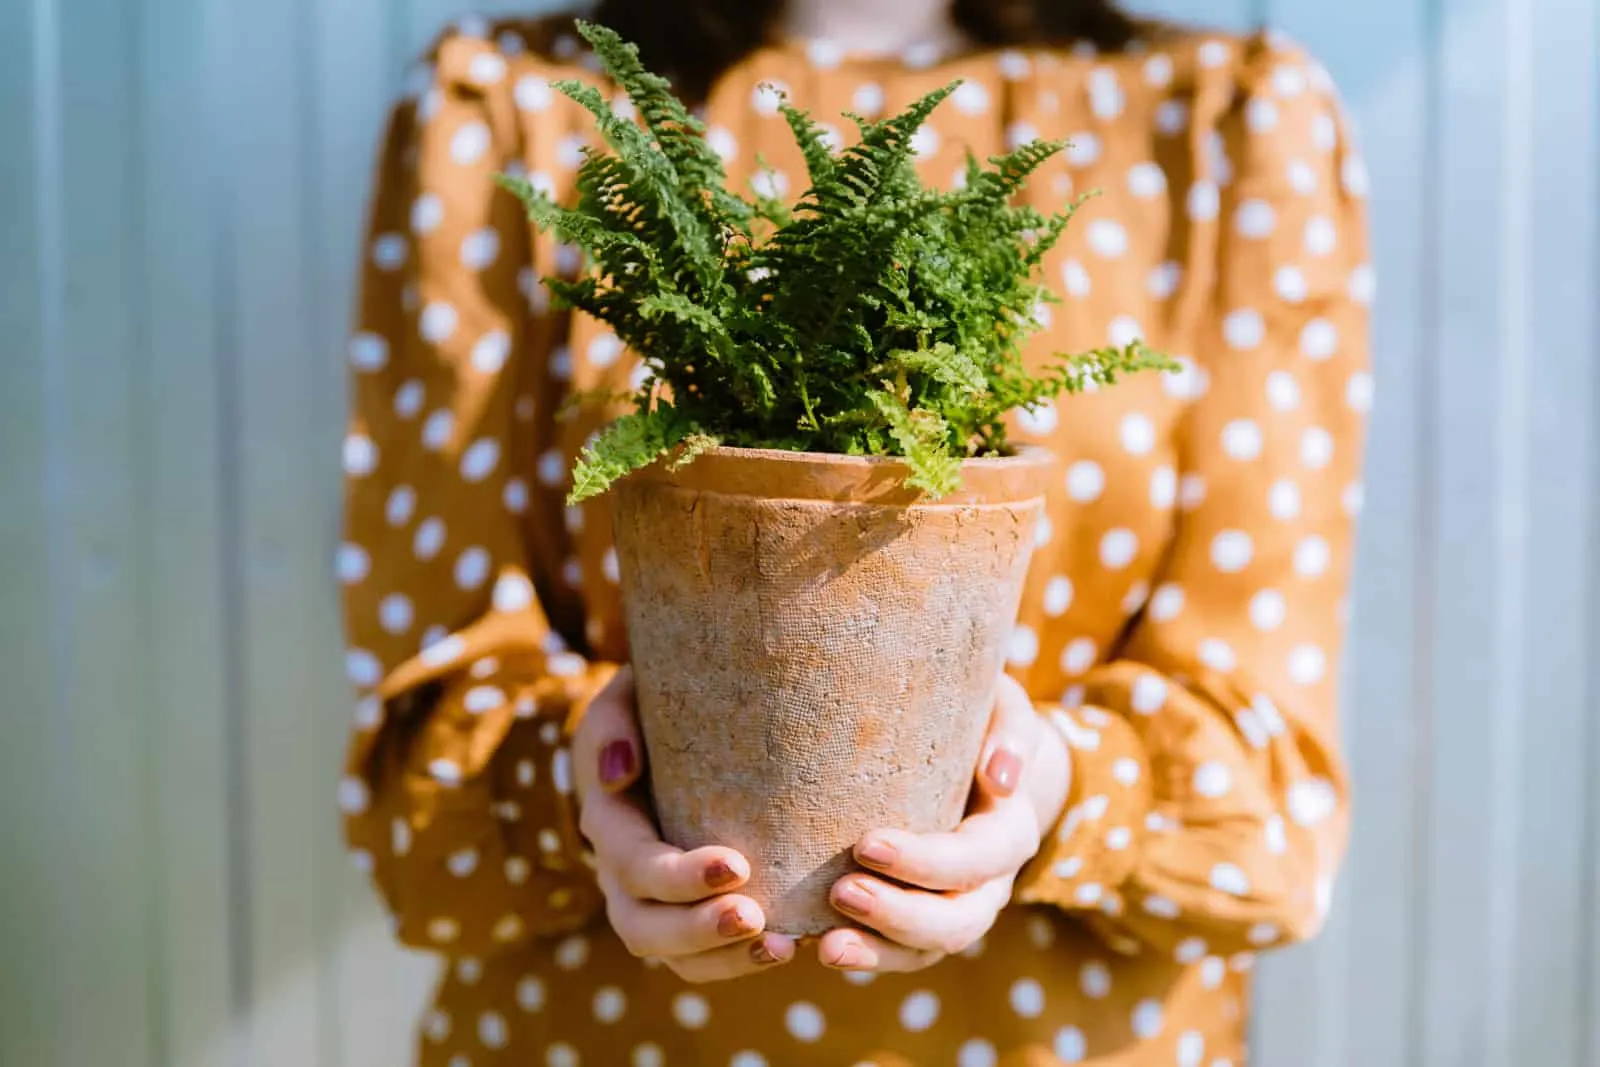 Woman holding green nephrolepis fern plant in terracotta flower pot